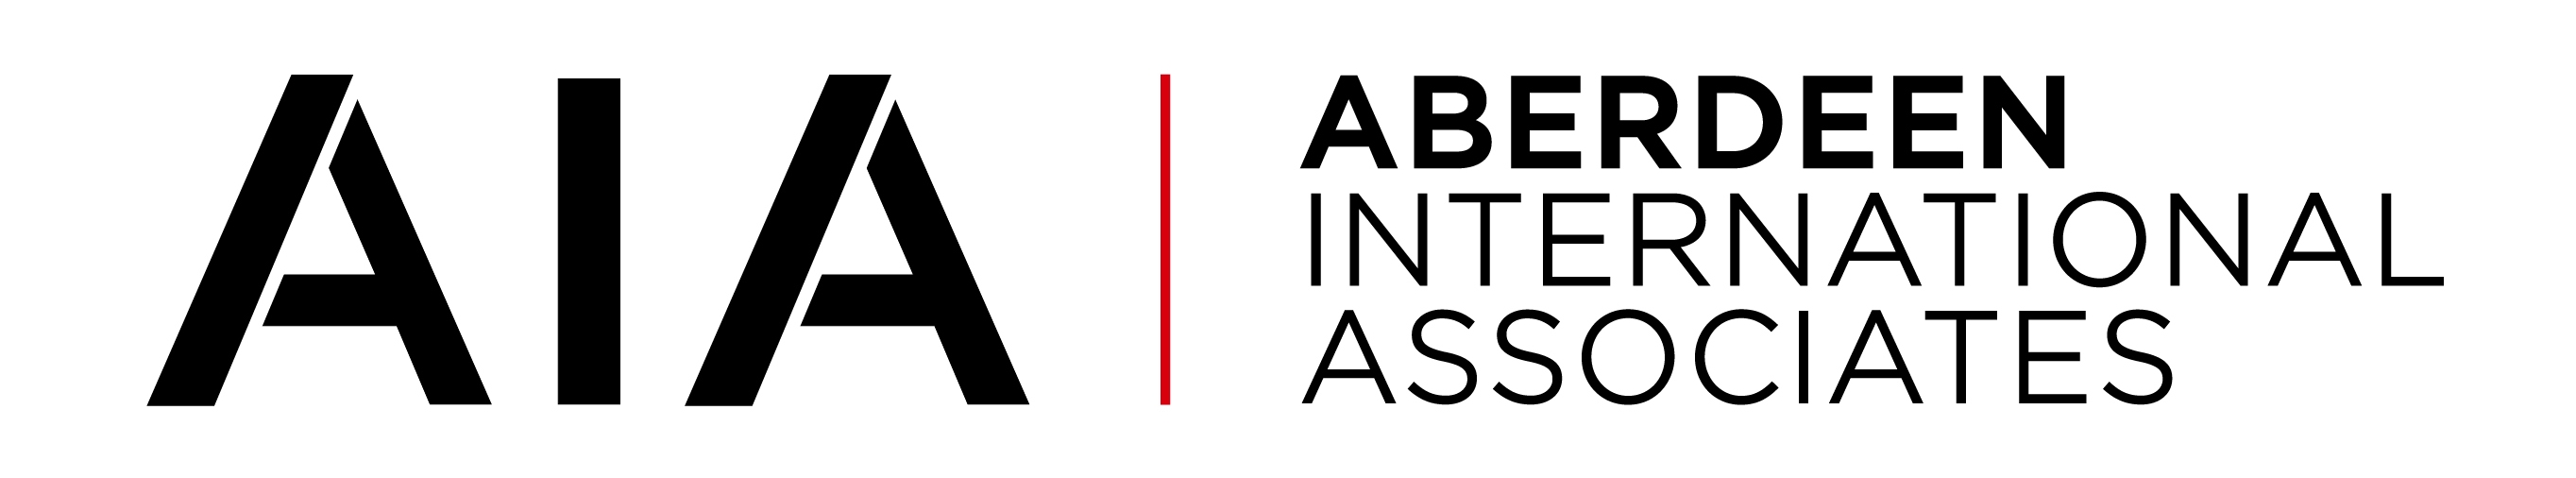 Aberdeen International Associates